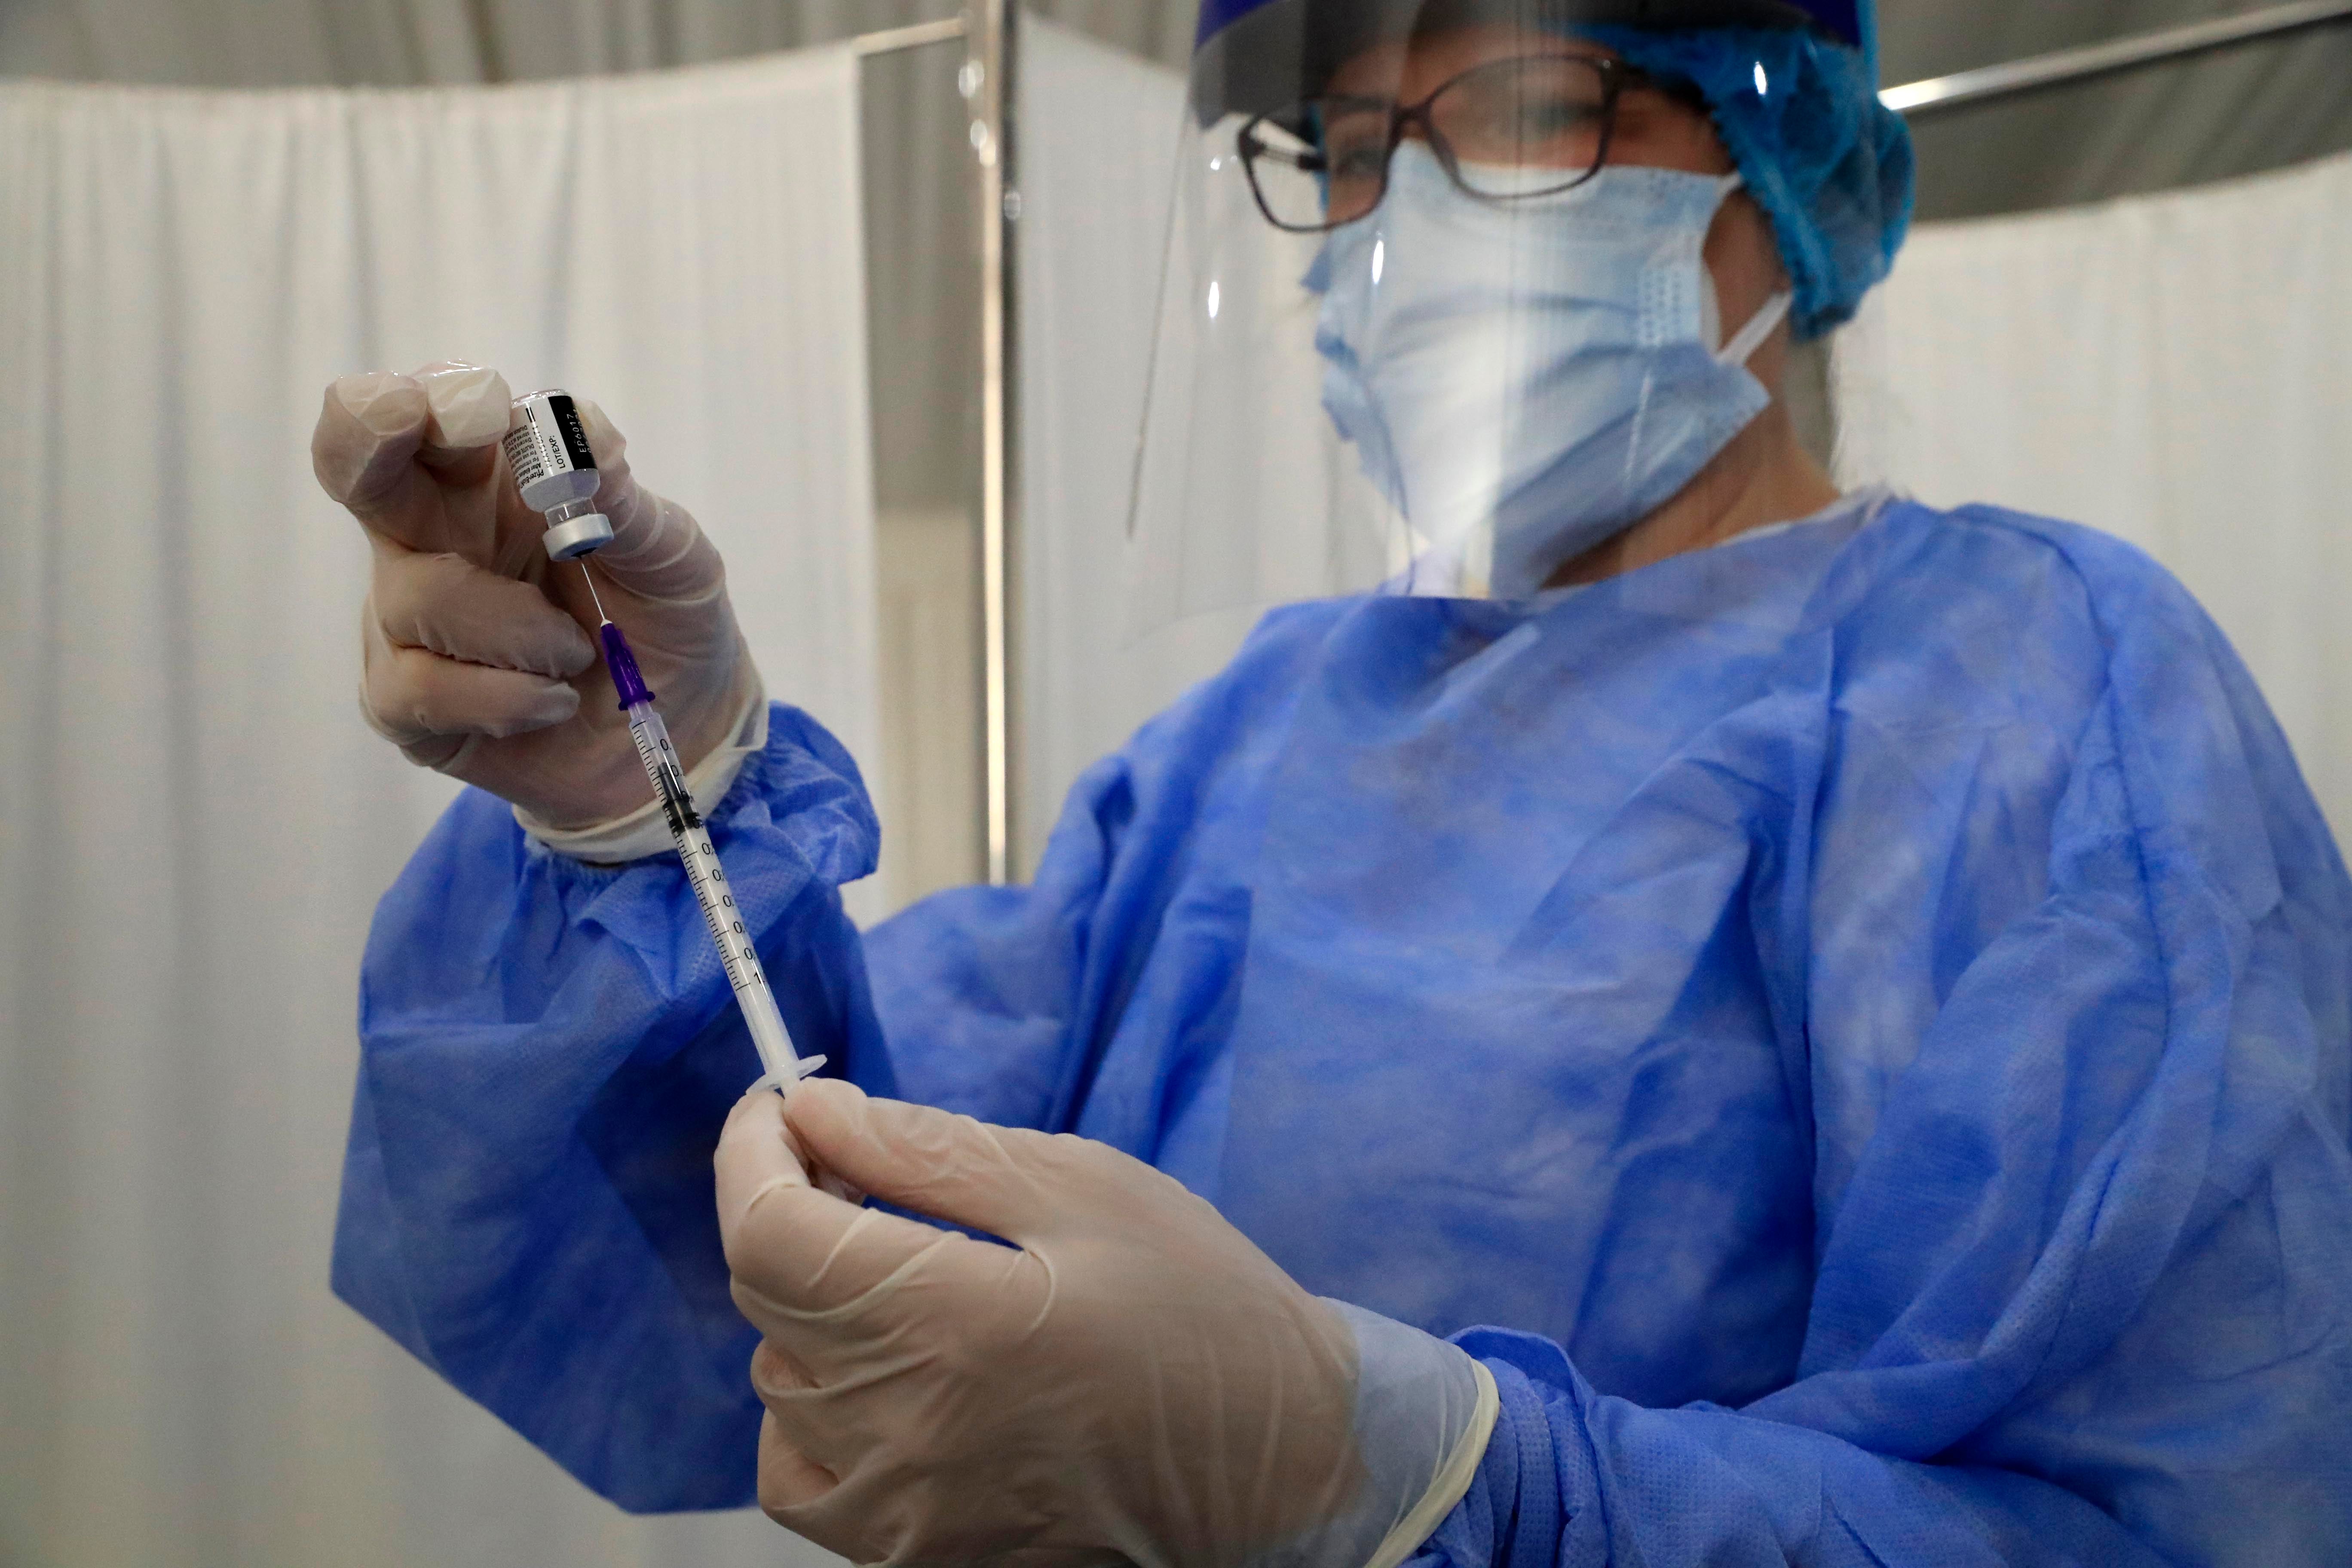 ممرض يحضر إبرة لقاح فيروس "كورونا" في "مستشفى سان جورج" في بيروت، لبنان، في 16 فبراير/شباط 2021. © أسوشيتد برس/حسين ملا